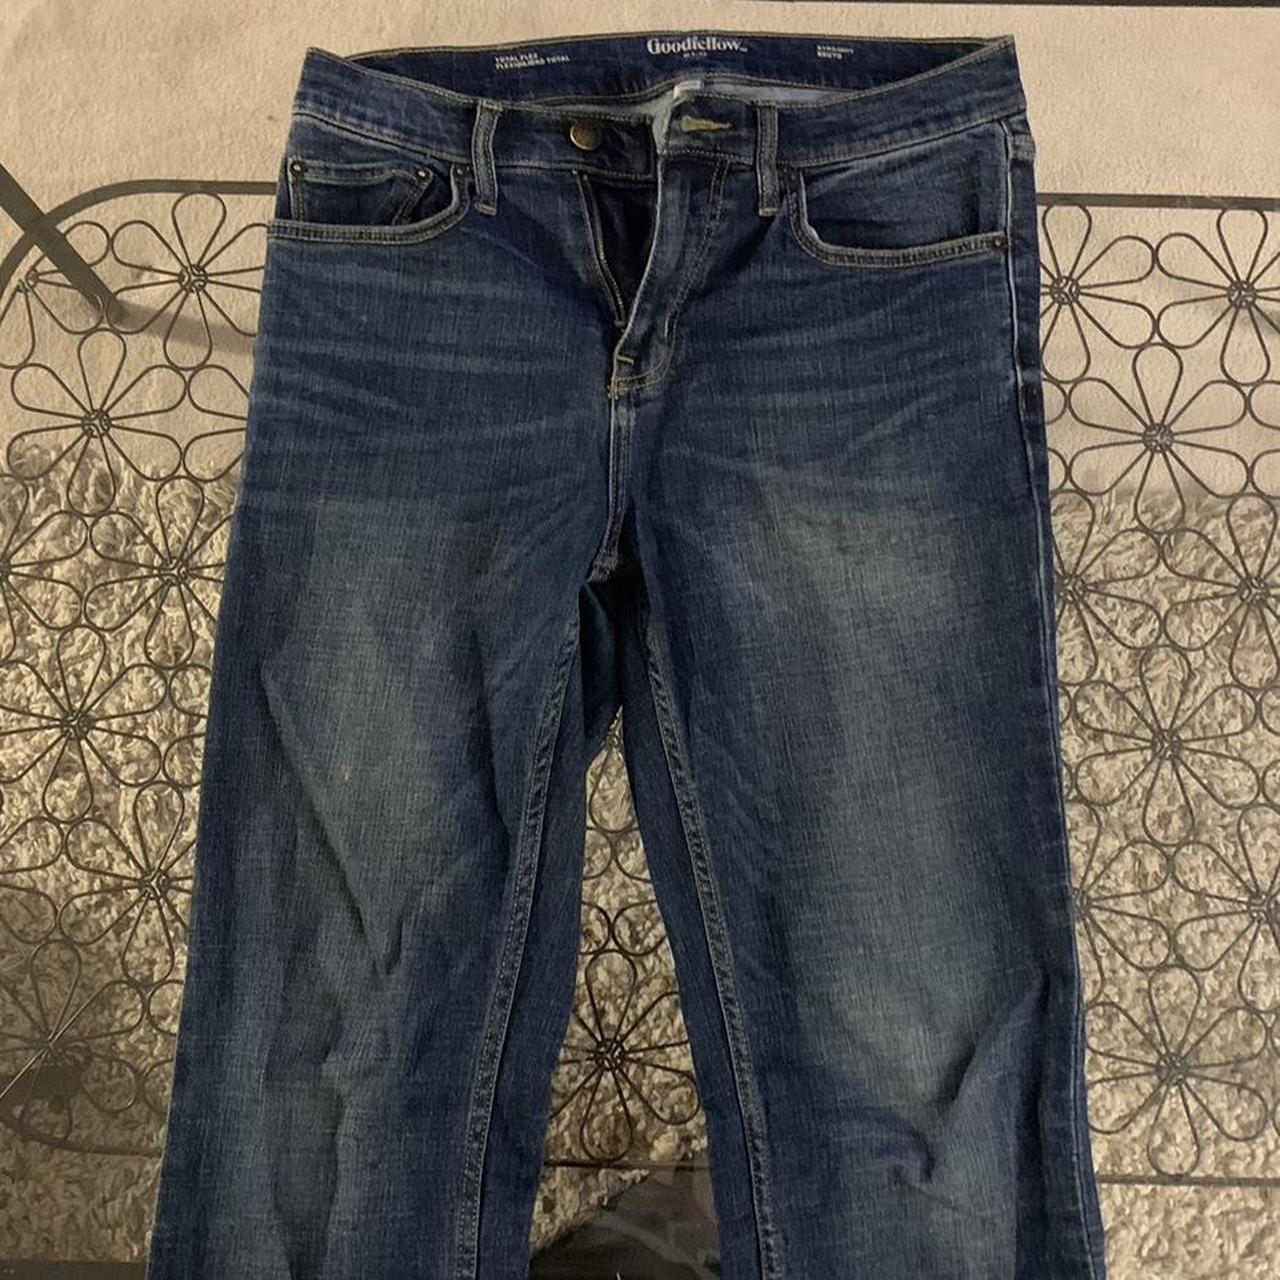 Target/Goodfellow - Men’s Dark Blue Jeans Size: 30x32 - Depop